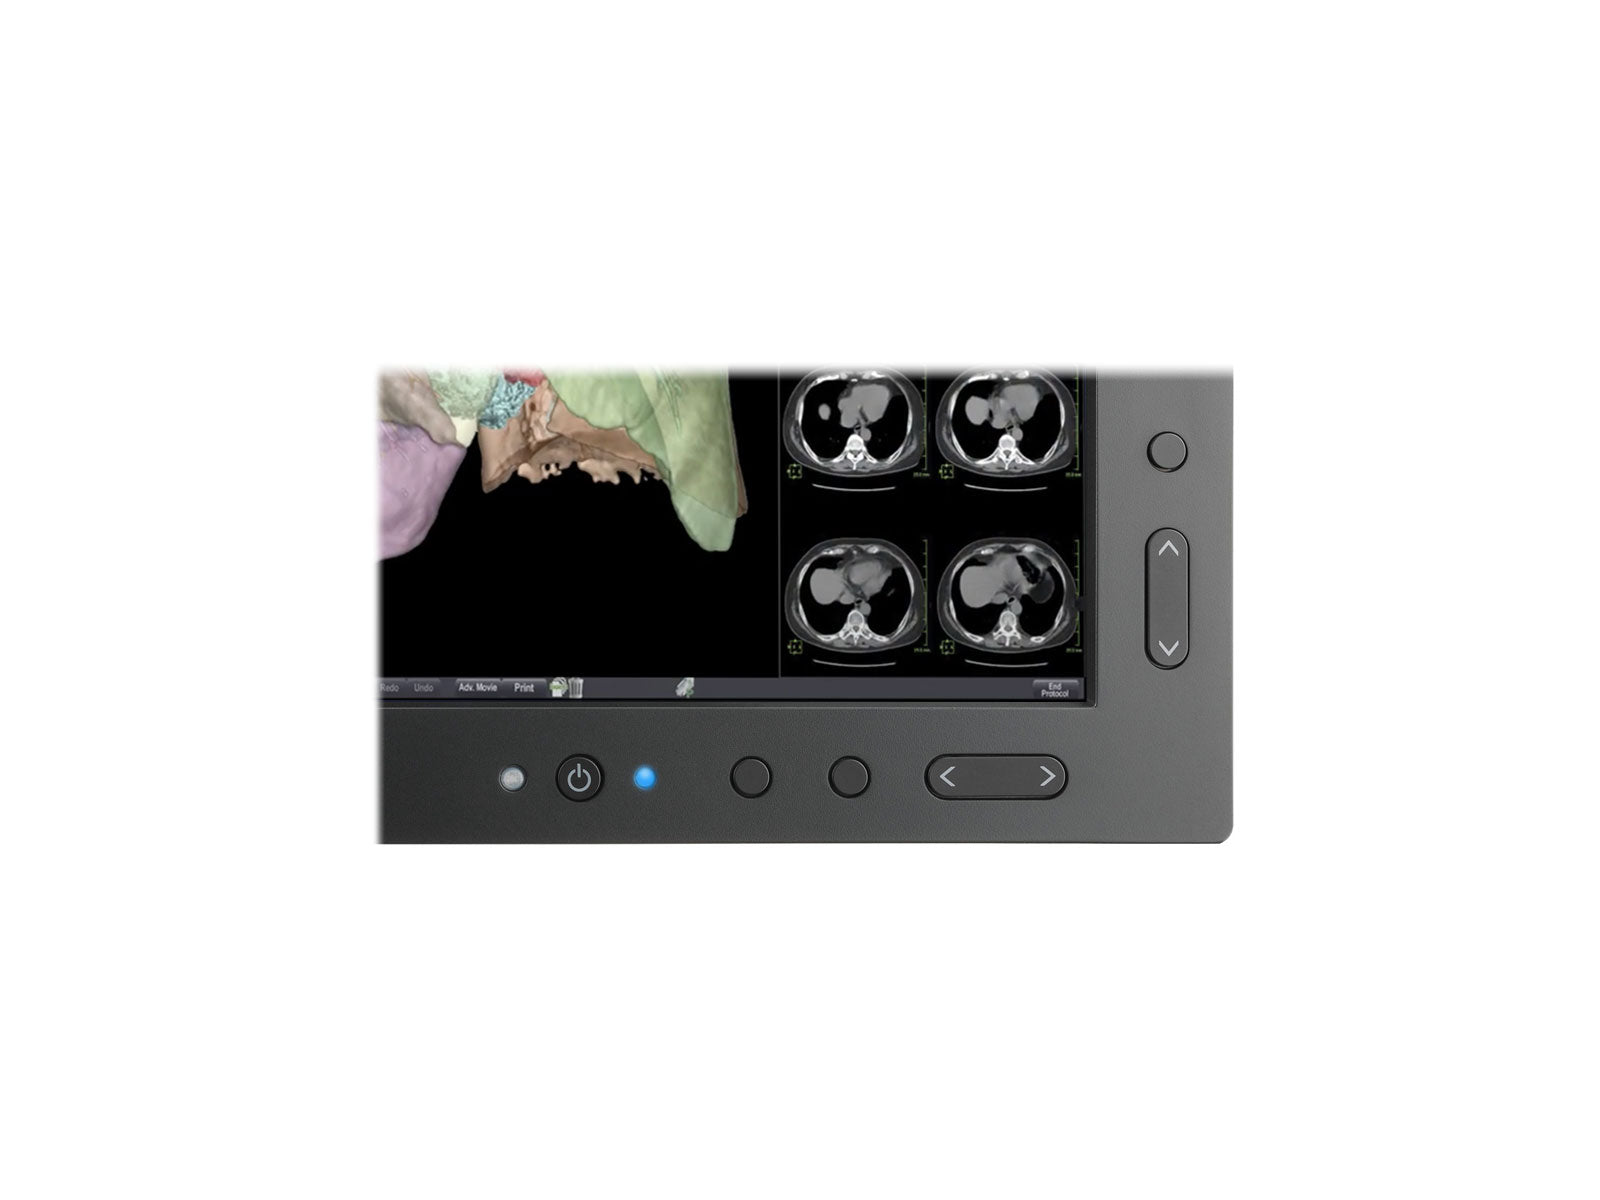 NEC MultiSync MD301C4 4MP 30" PACS-Display für allgemeine Radiologie (MD301C4)